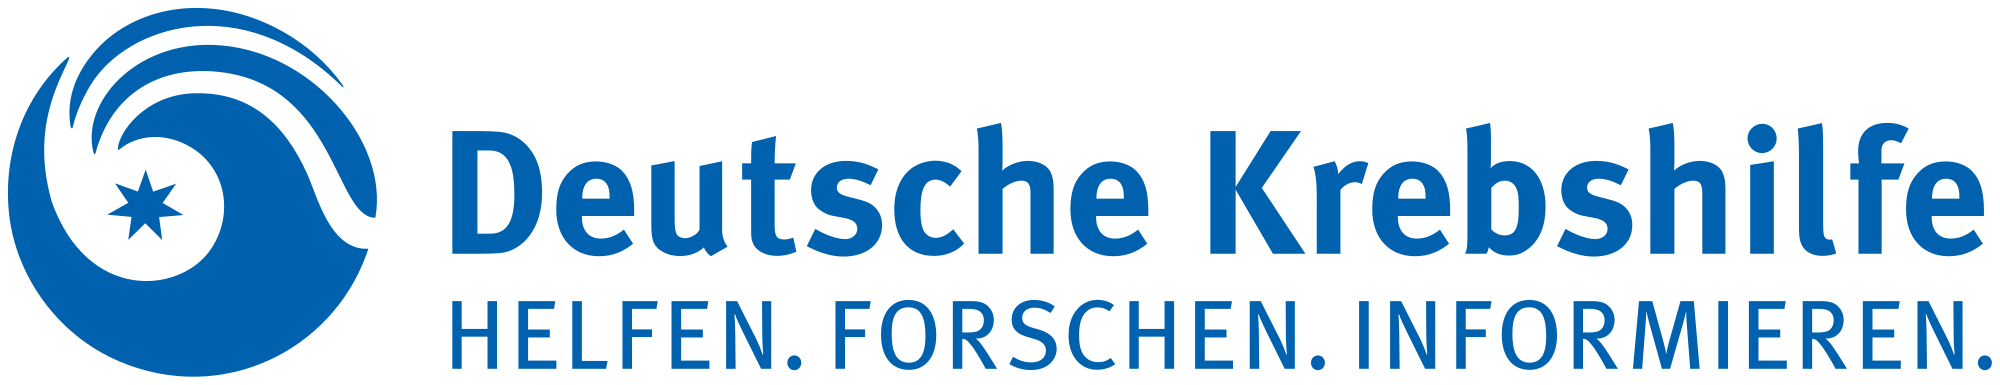 2000px Deutsche Krebshilfe Logosvg